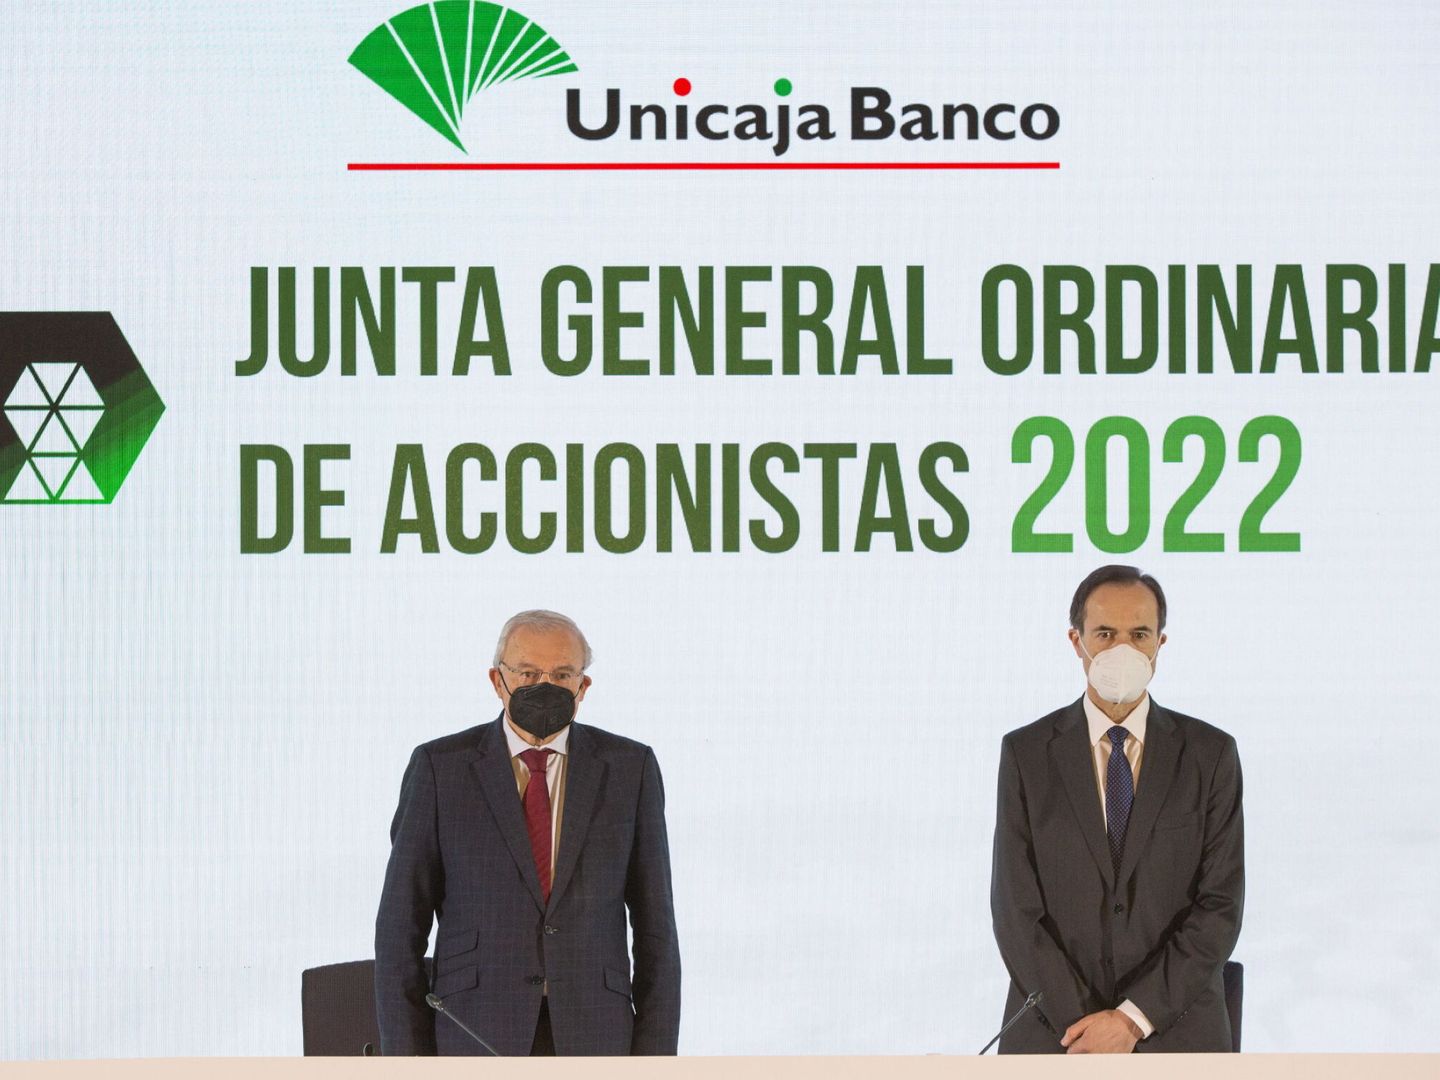 El presidente de Unicaja Banco, Manuel Azuaga y el consejero delegado de Unicaja Banco, Manuel Menéndez, en una reunión de la Junta General Ordinaria de Accionistas. (EFE/Unicaja Banco)  